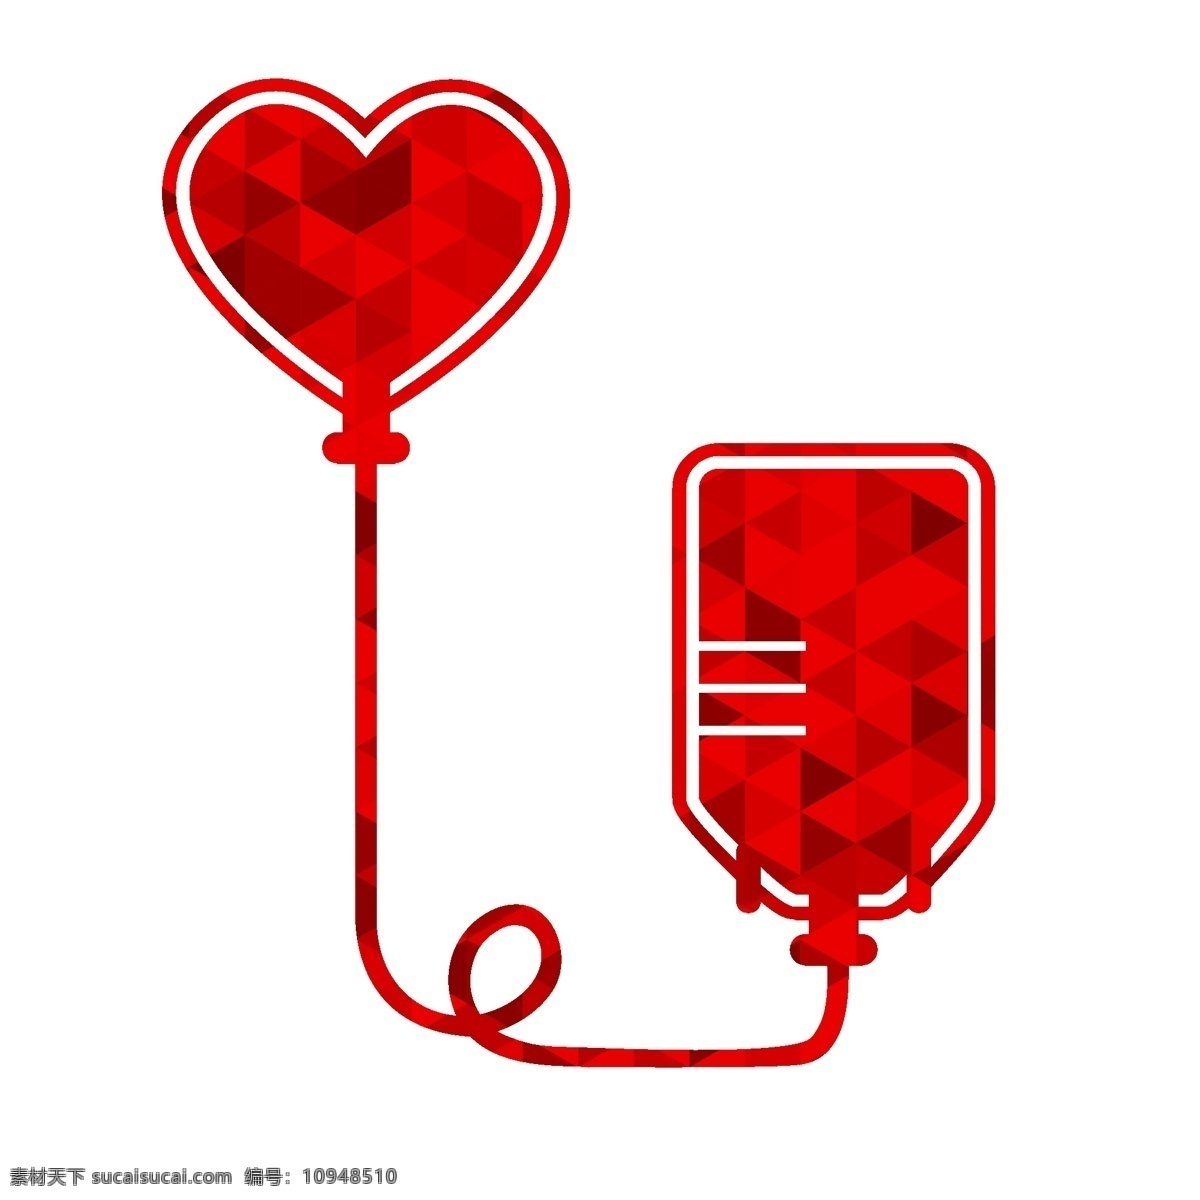 创意 献血 标志 矢量 献血袋 爱心标志 公益 矢量图 白色